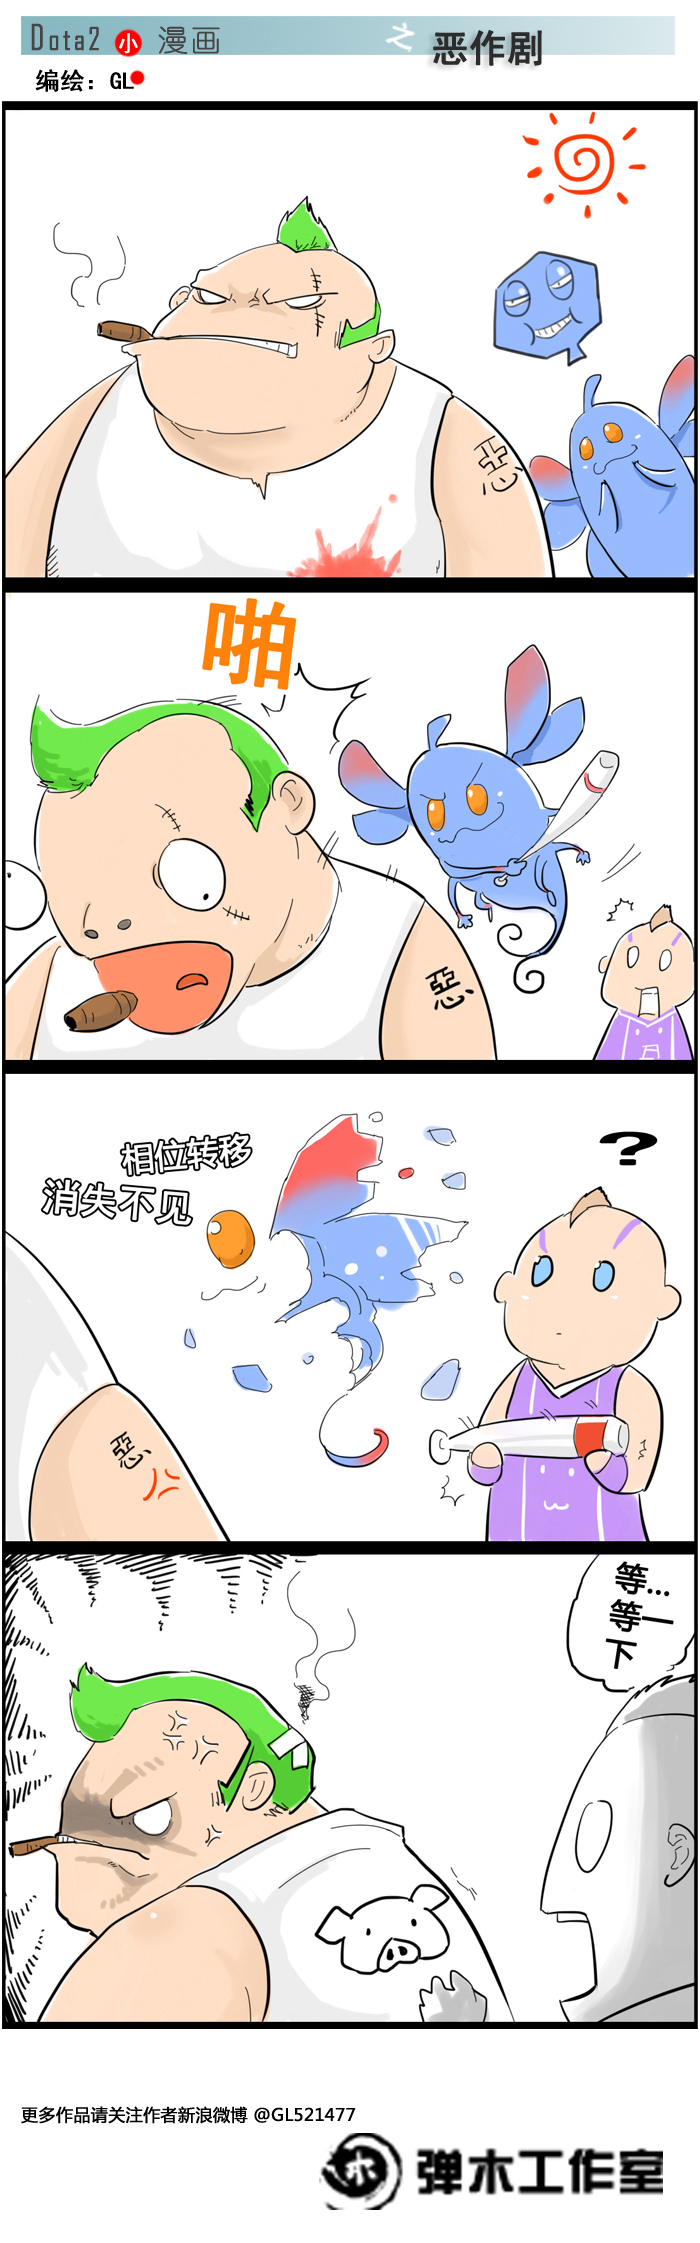 仙女龙变身嘲讽脸 DOTA2帕克专属四格漫画